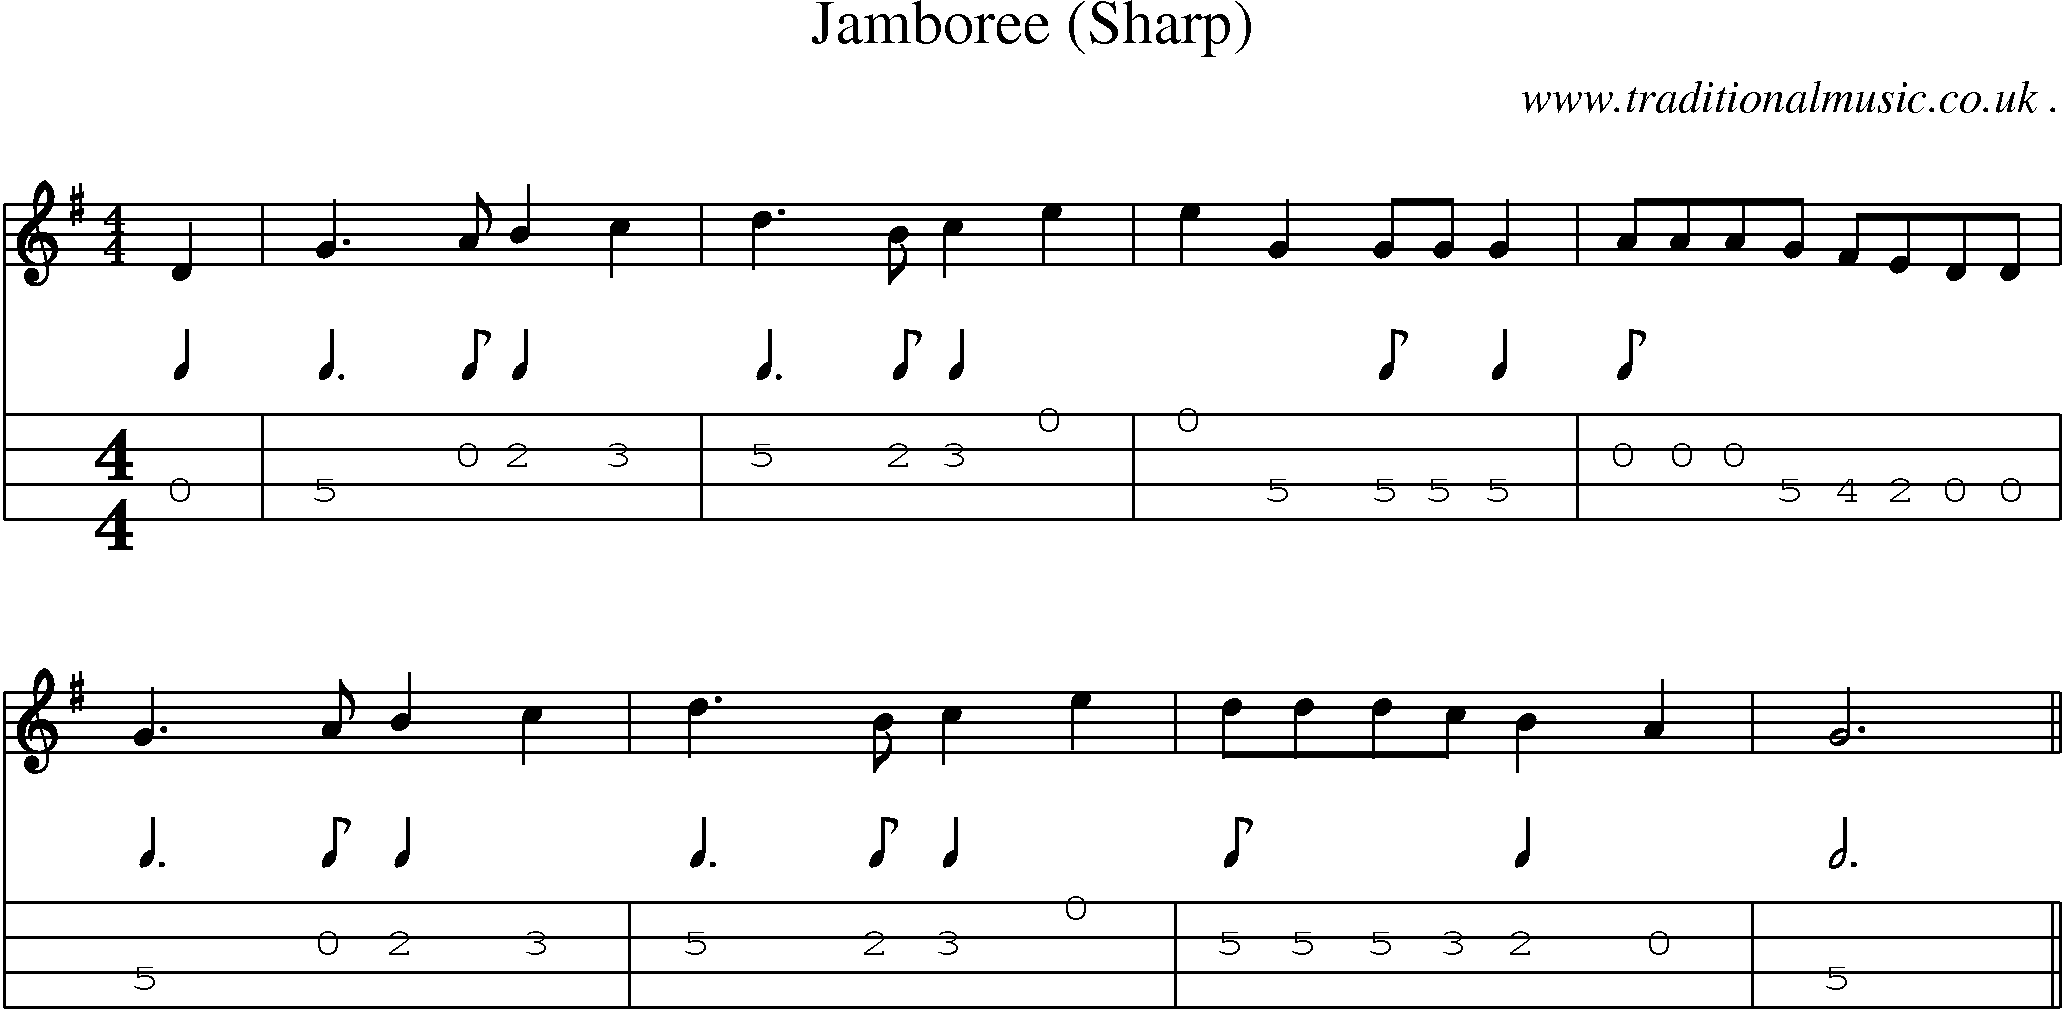 Sheet-Music and Mandolin Tabs for Jamboree (sharp)